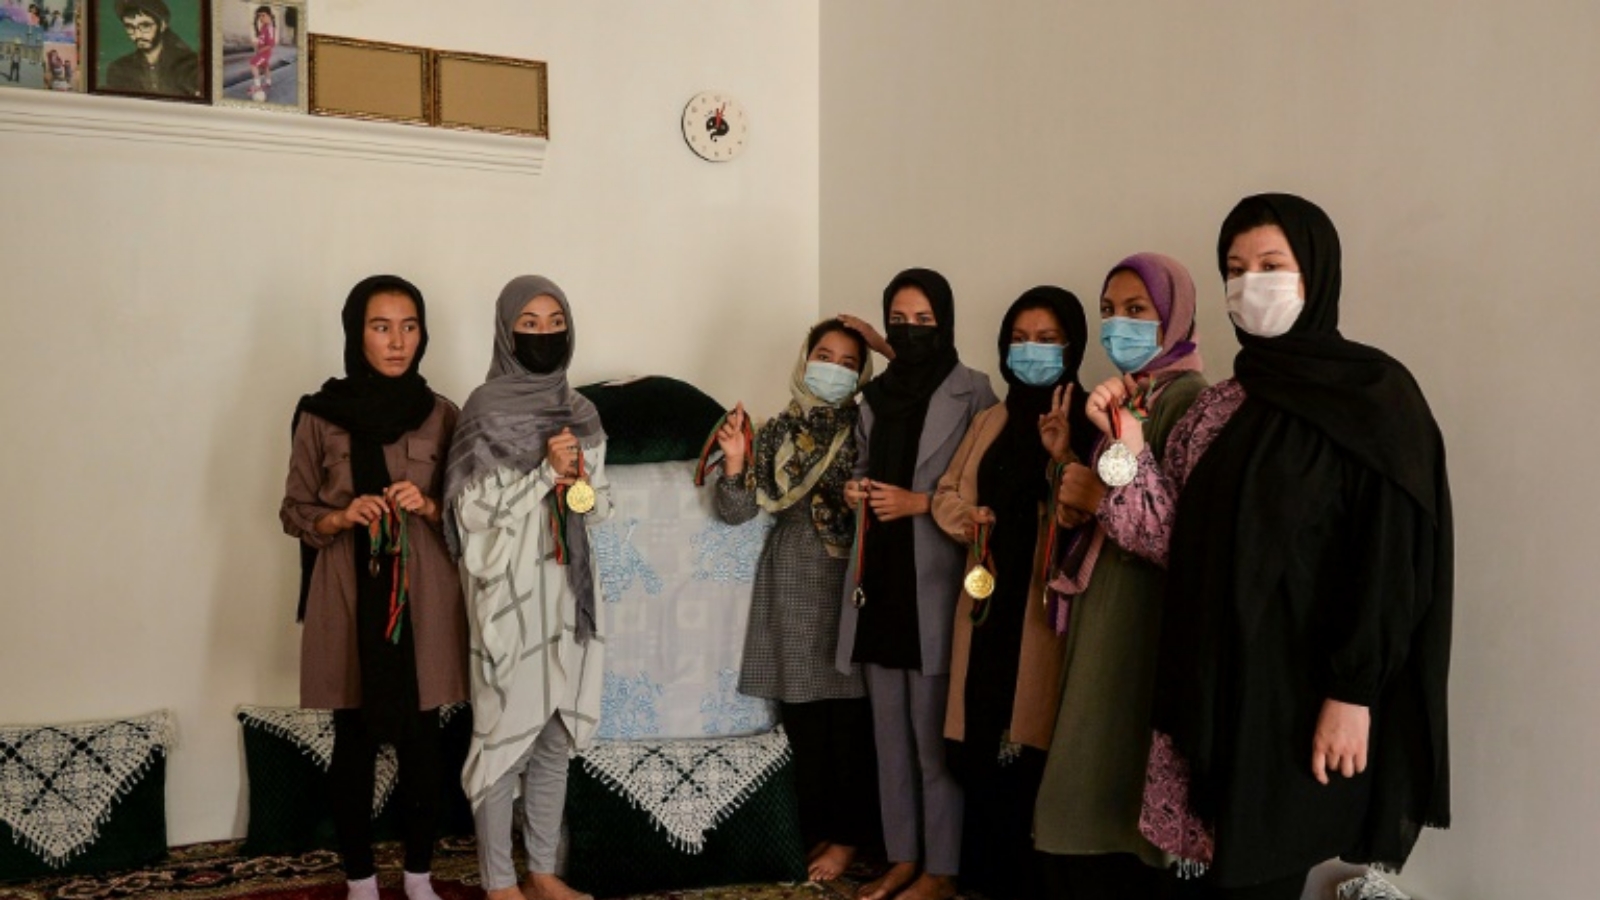 البطلة الأفغانية زرغونة نوري (يسار) تقف مع زميلاتها في أكاديمية التايكواندو الأفغانية وميدالياتهن في منزل في مقاطعة هرات. في 22 أيلول/سبتمبر 2021.